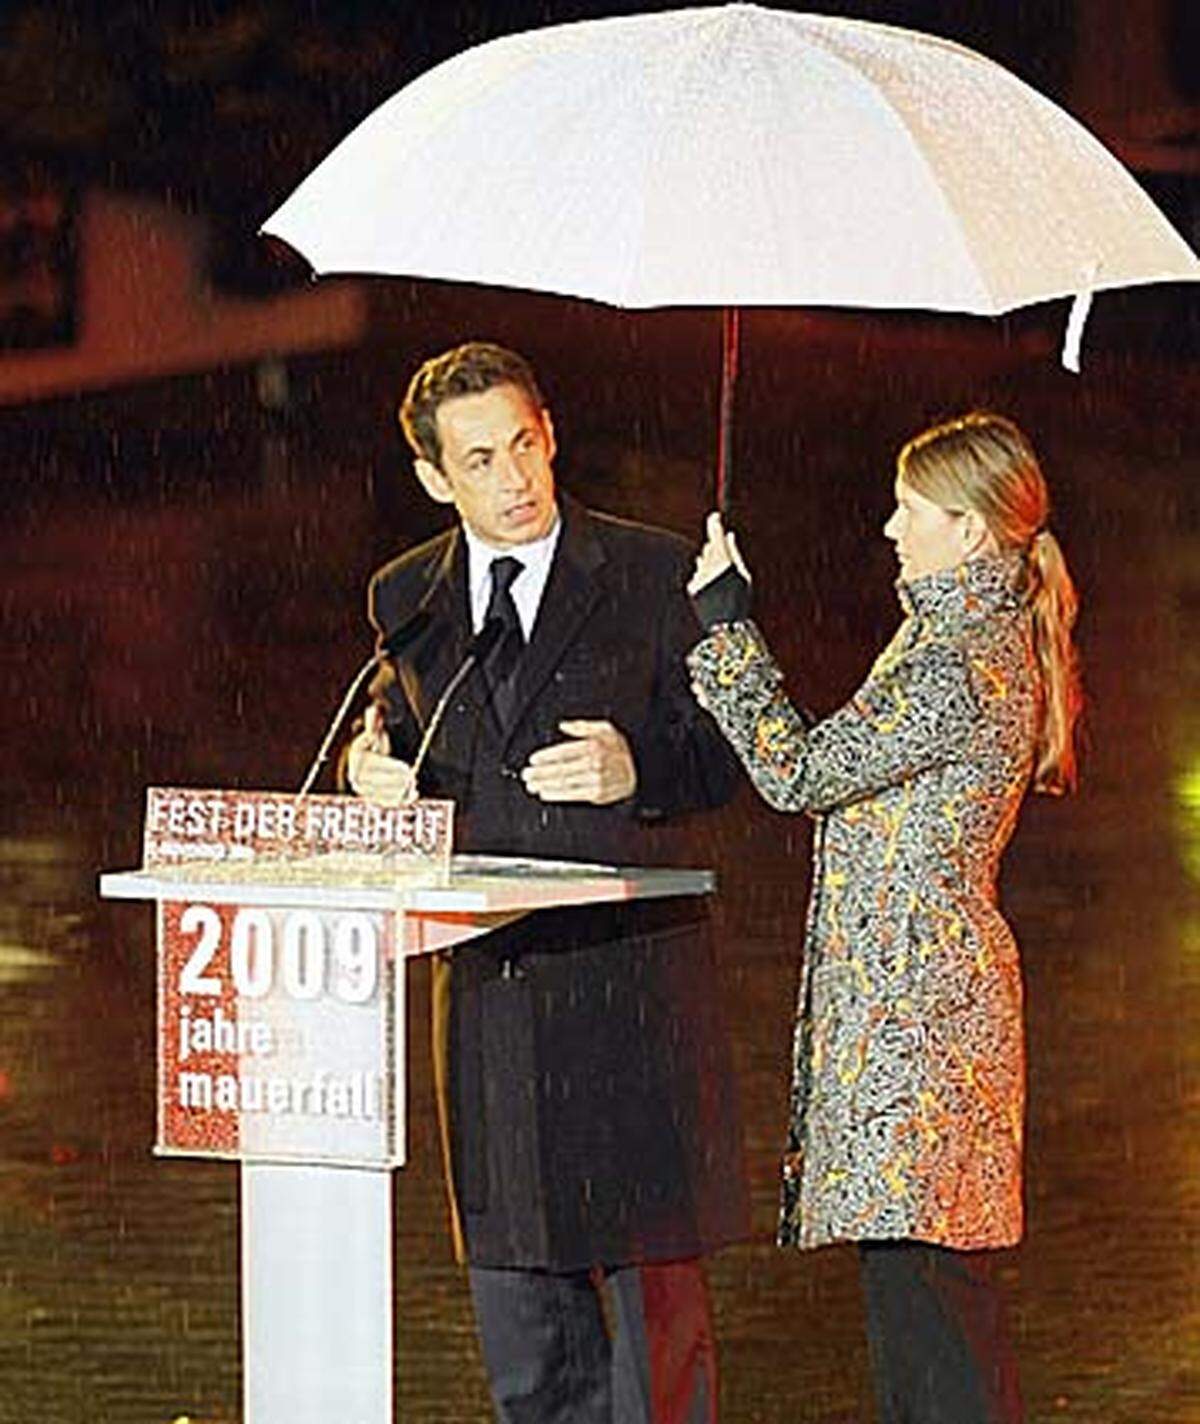 Der französische Präsident Nicolas Sarkozy sagte, am 9. November 1989 habe die ganze Welt nach Berlin geschaut. "Es waren die Berliner, die die Mauer der Schande zerstört haben. Diese Mauer, die alle für unzerstörbar hielten, sie haben sie niedergerissen."